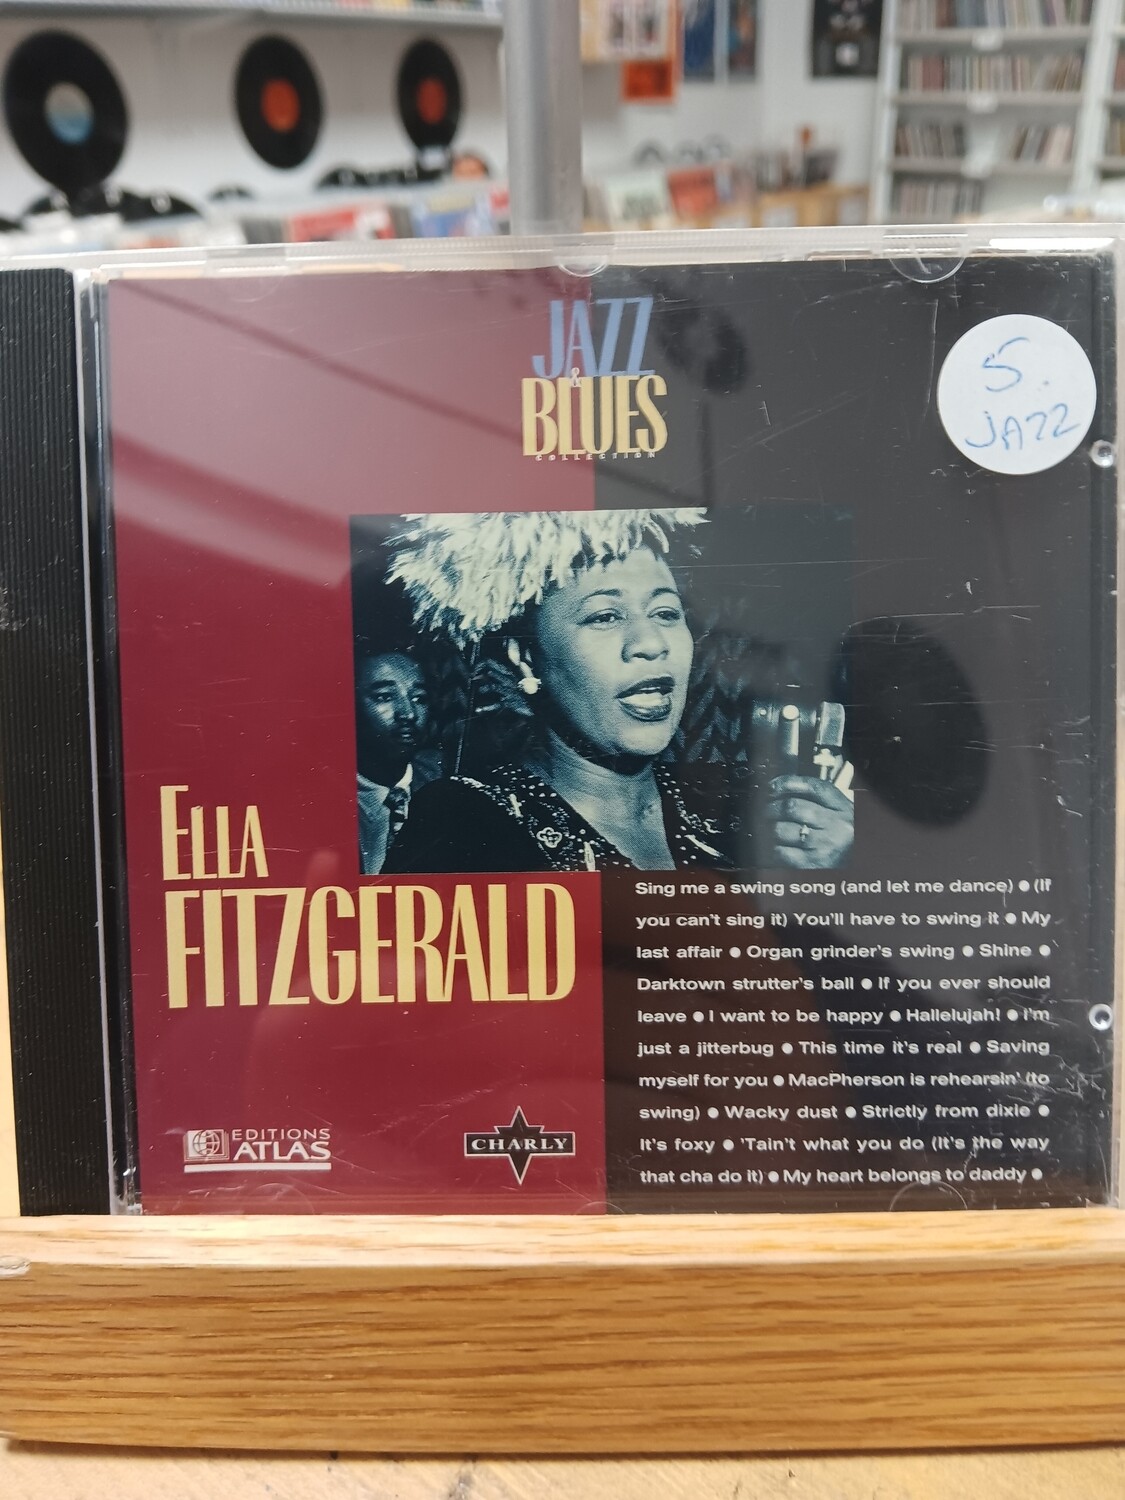 ELLA FITZGERALD - Jazz Blues (CD)